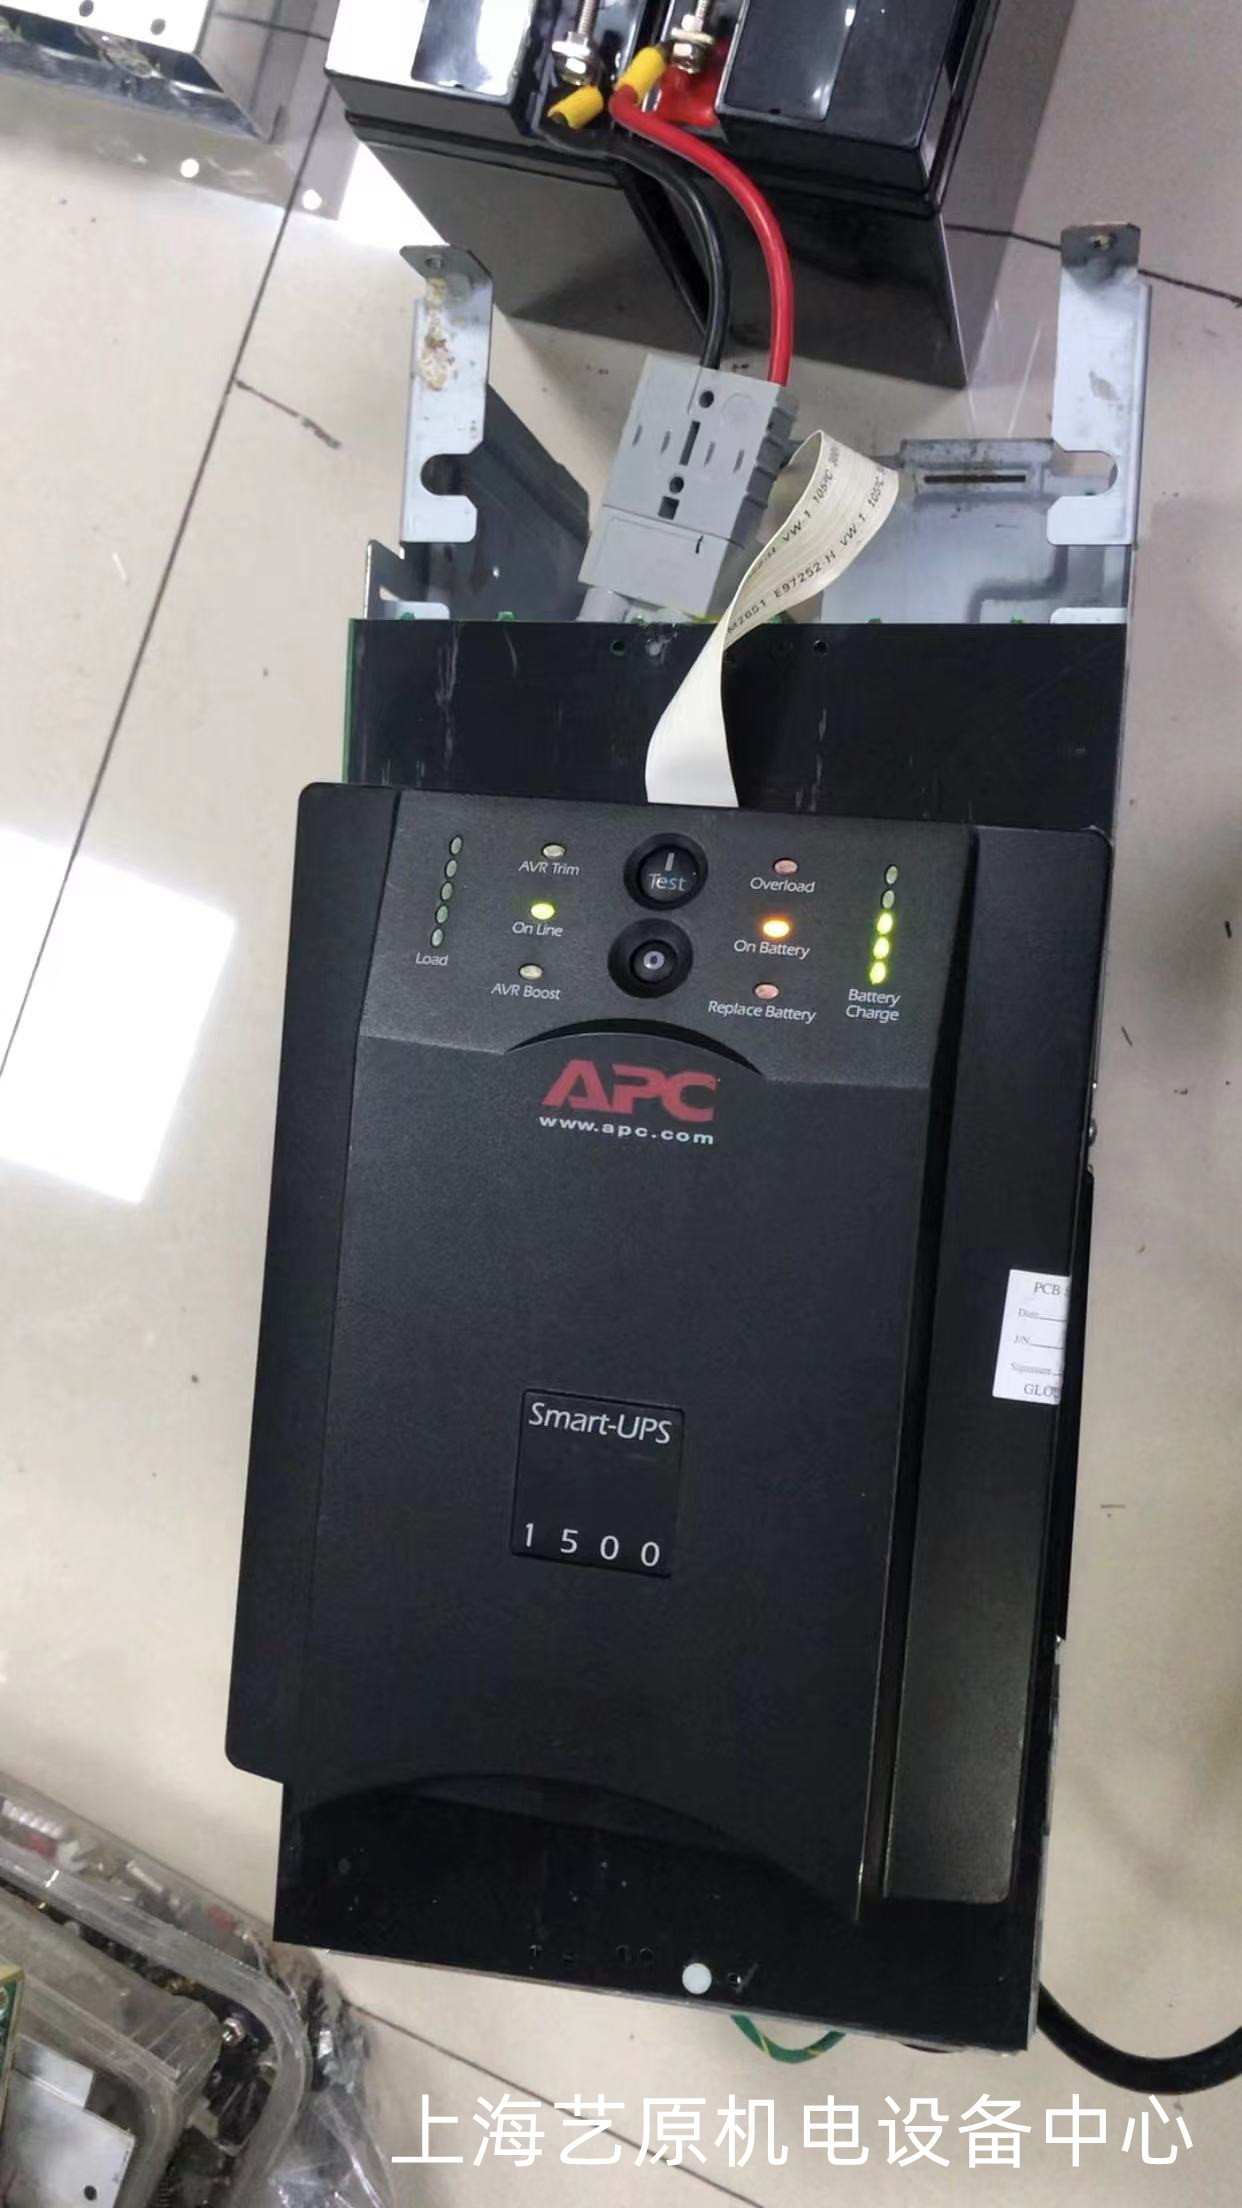 廊坊APC-Smart-UPS-1500不间断电源维修维修 Smart-UPS-1500不间断电源 工业电源